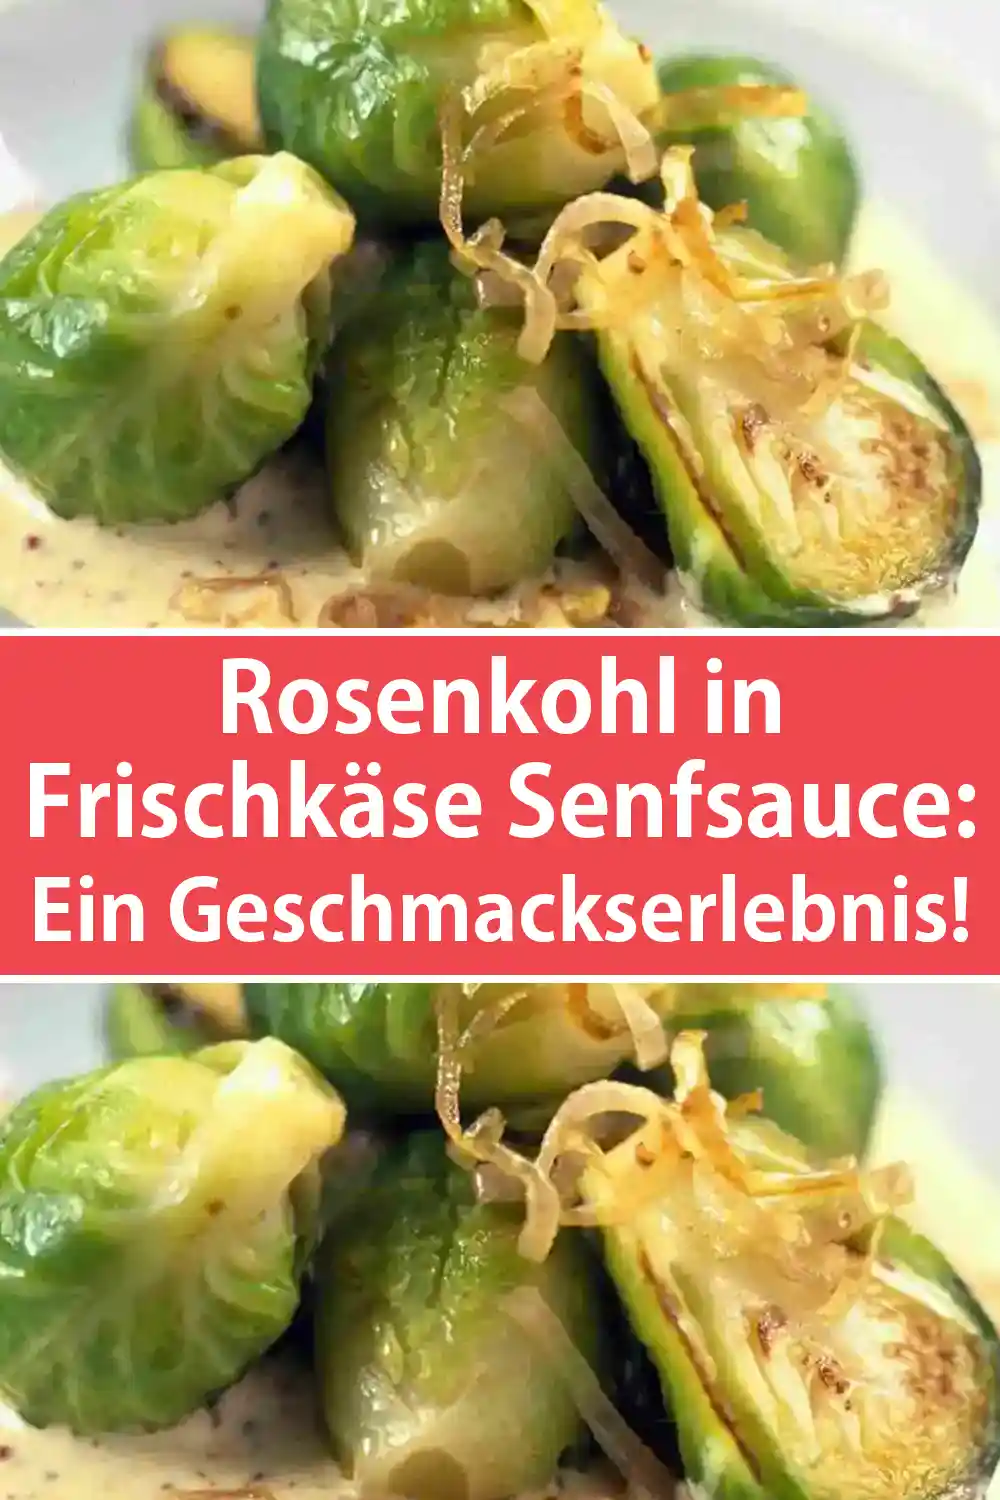 Rosenkohl in Frischkäse Senfsauce Rezept: Ein Geschmackserlebnis!